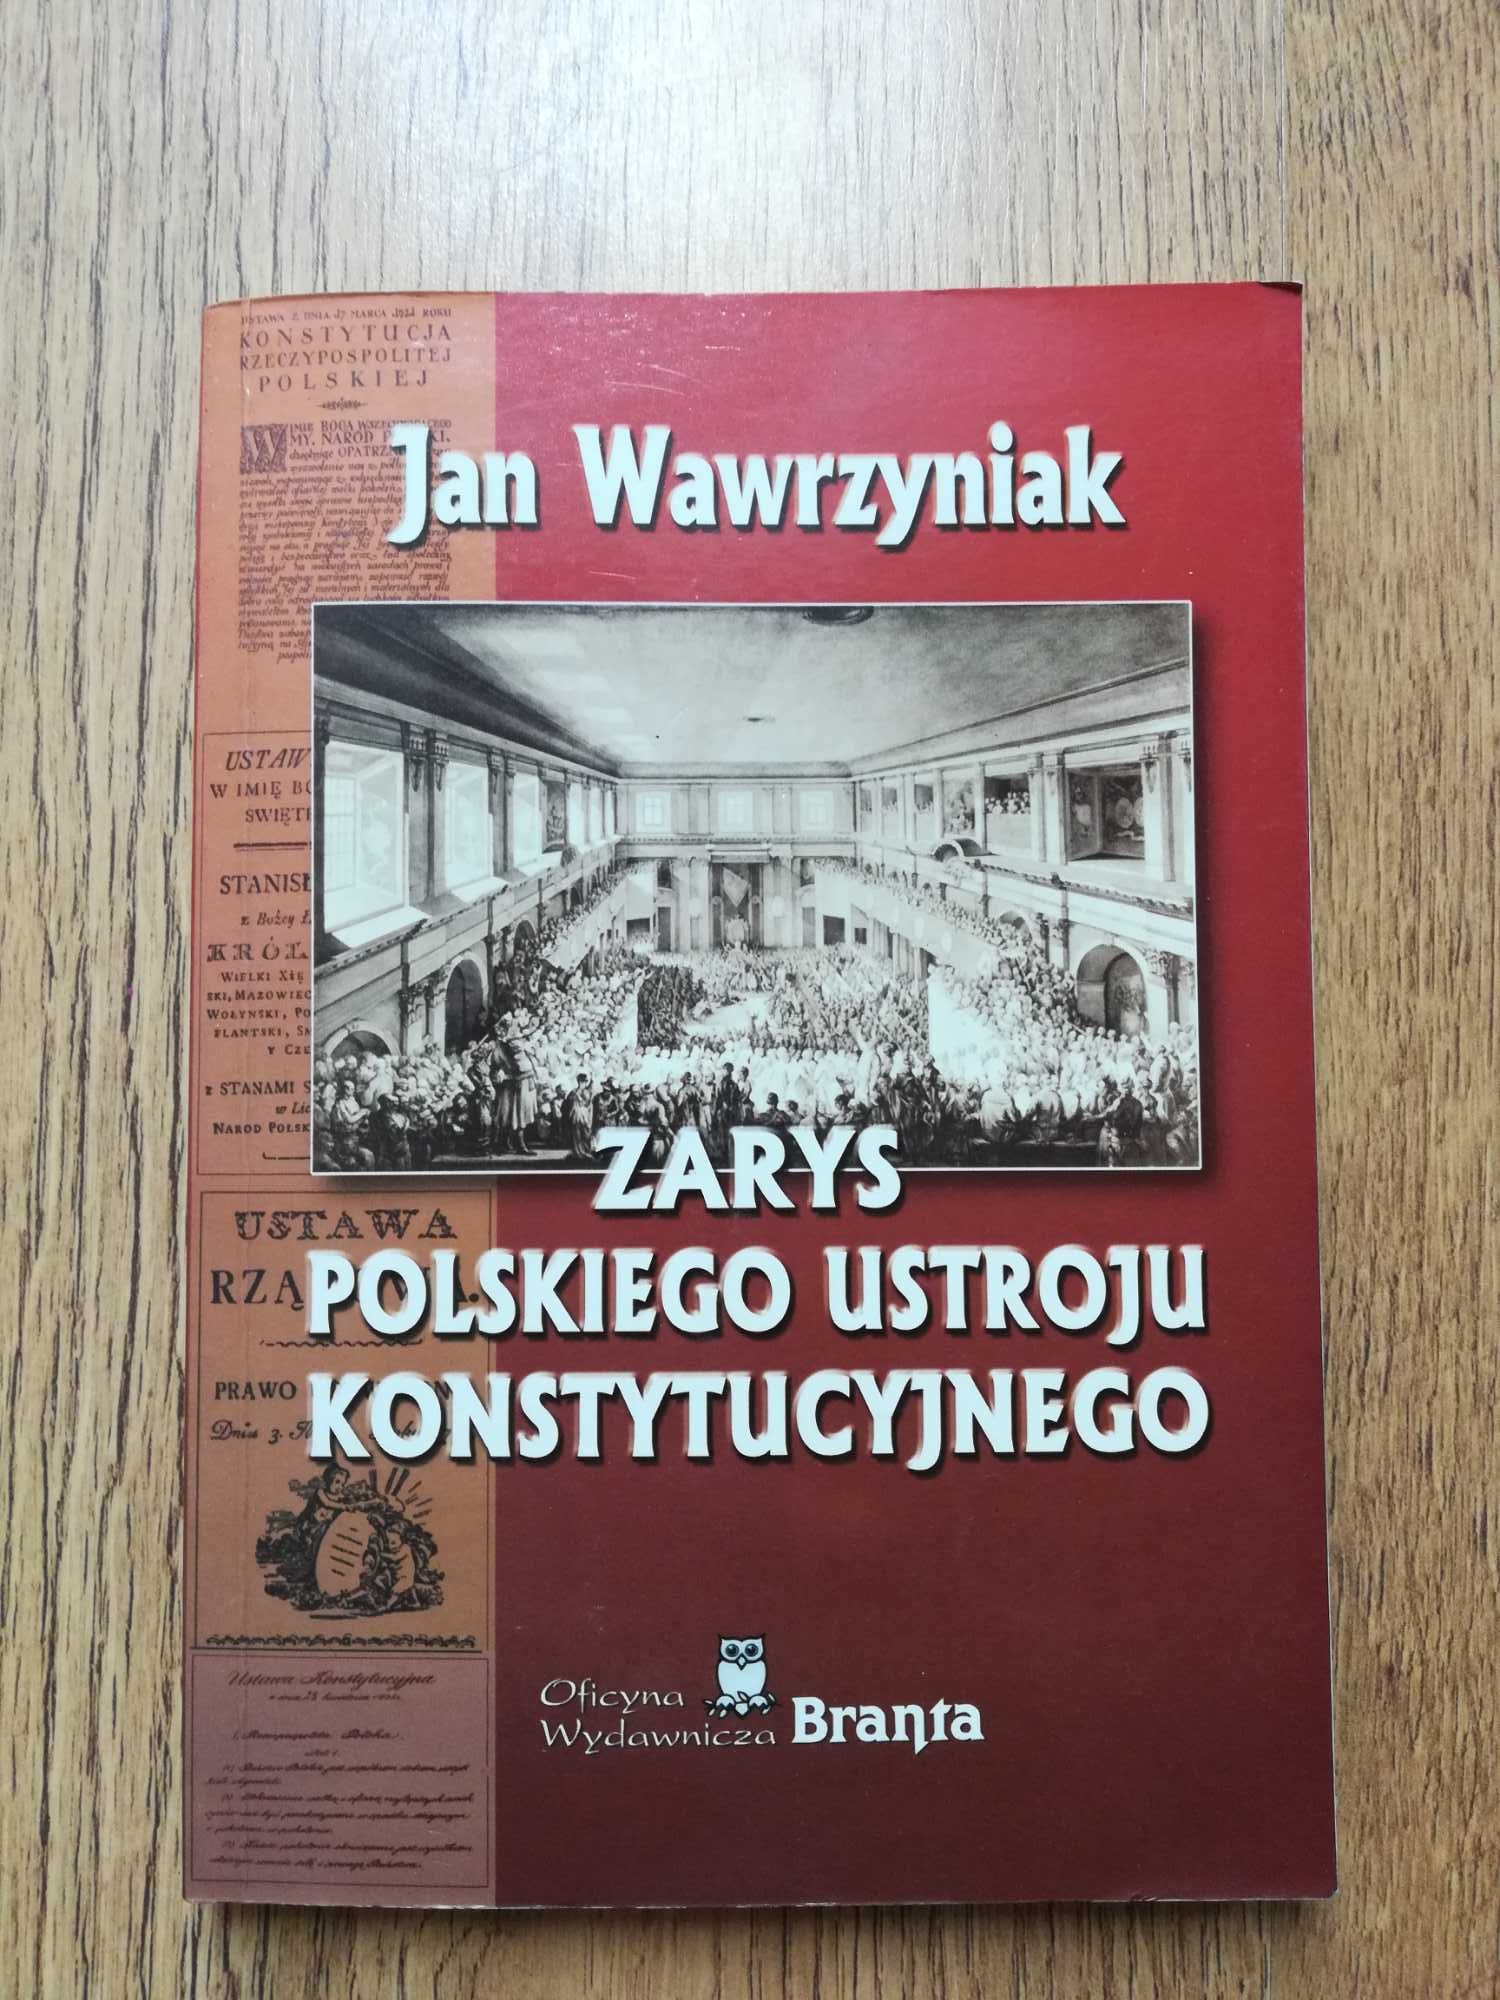 "Zarys polskiego ustroju konstytucyjnego" Jan Wawrzyniak